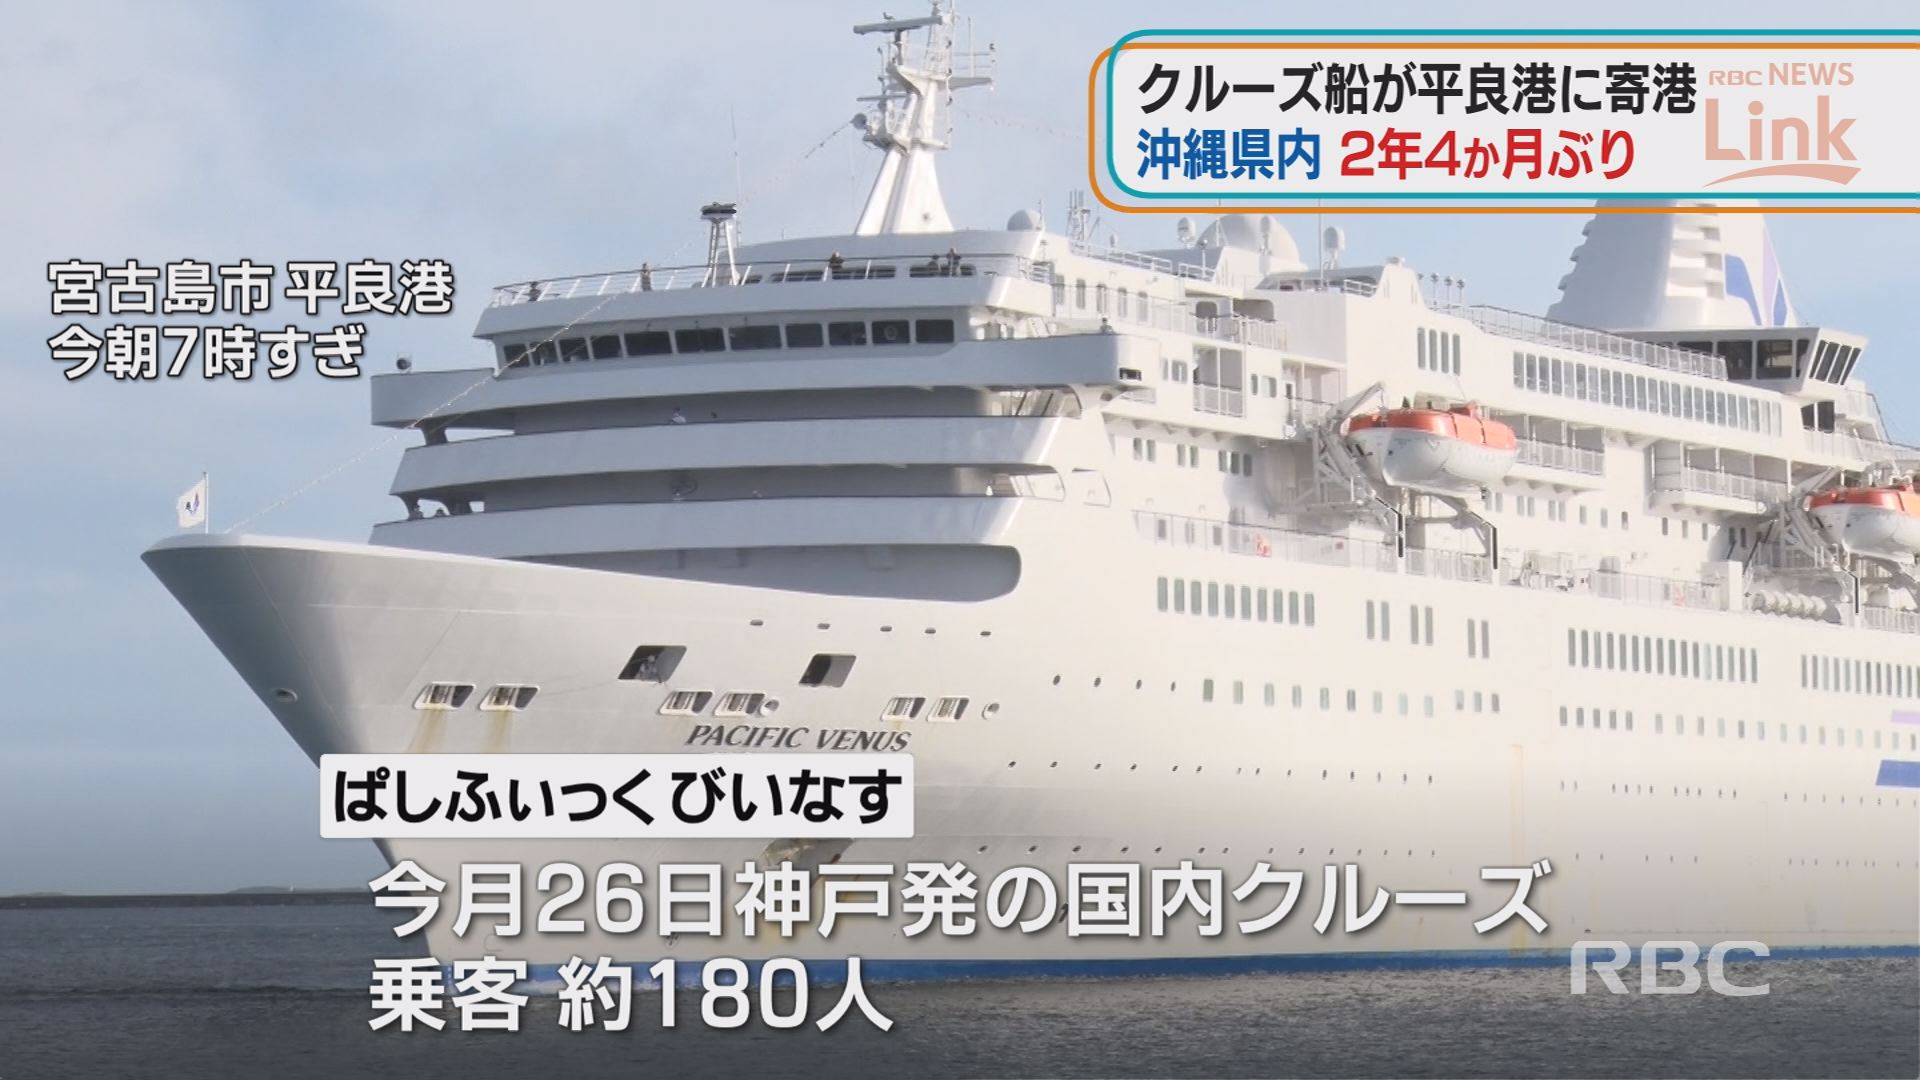 「経済と観光の復活のきっかけに」県内2年4か月ぶりにクルーズ船が寄港　